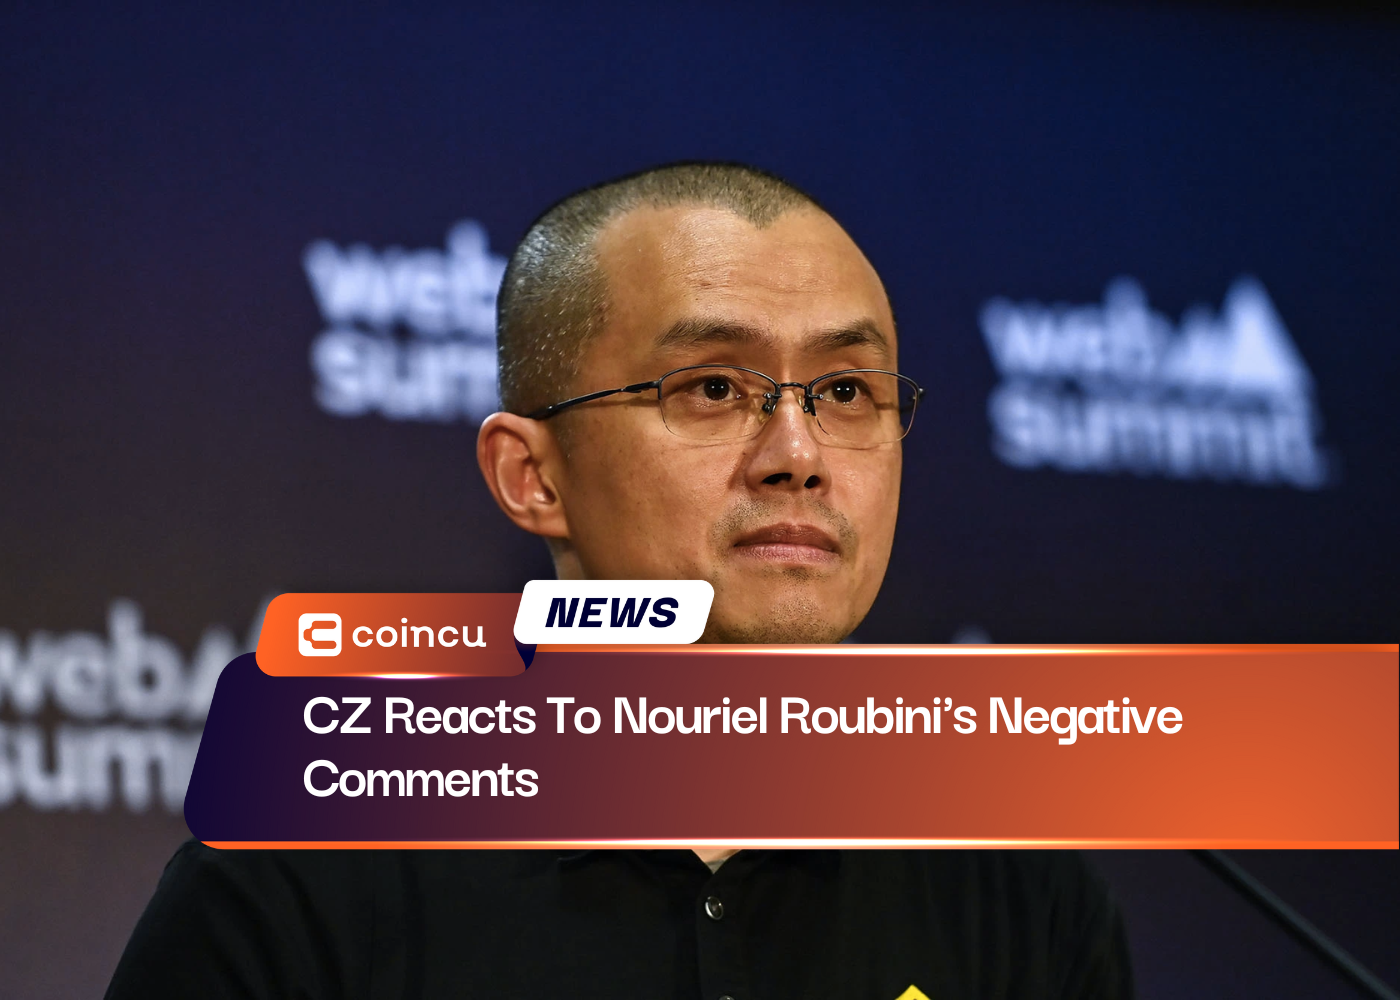 CZ Reacts To Nouriel Roubini's Negative Comments